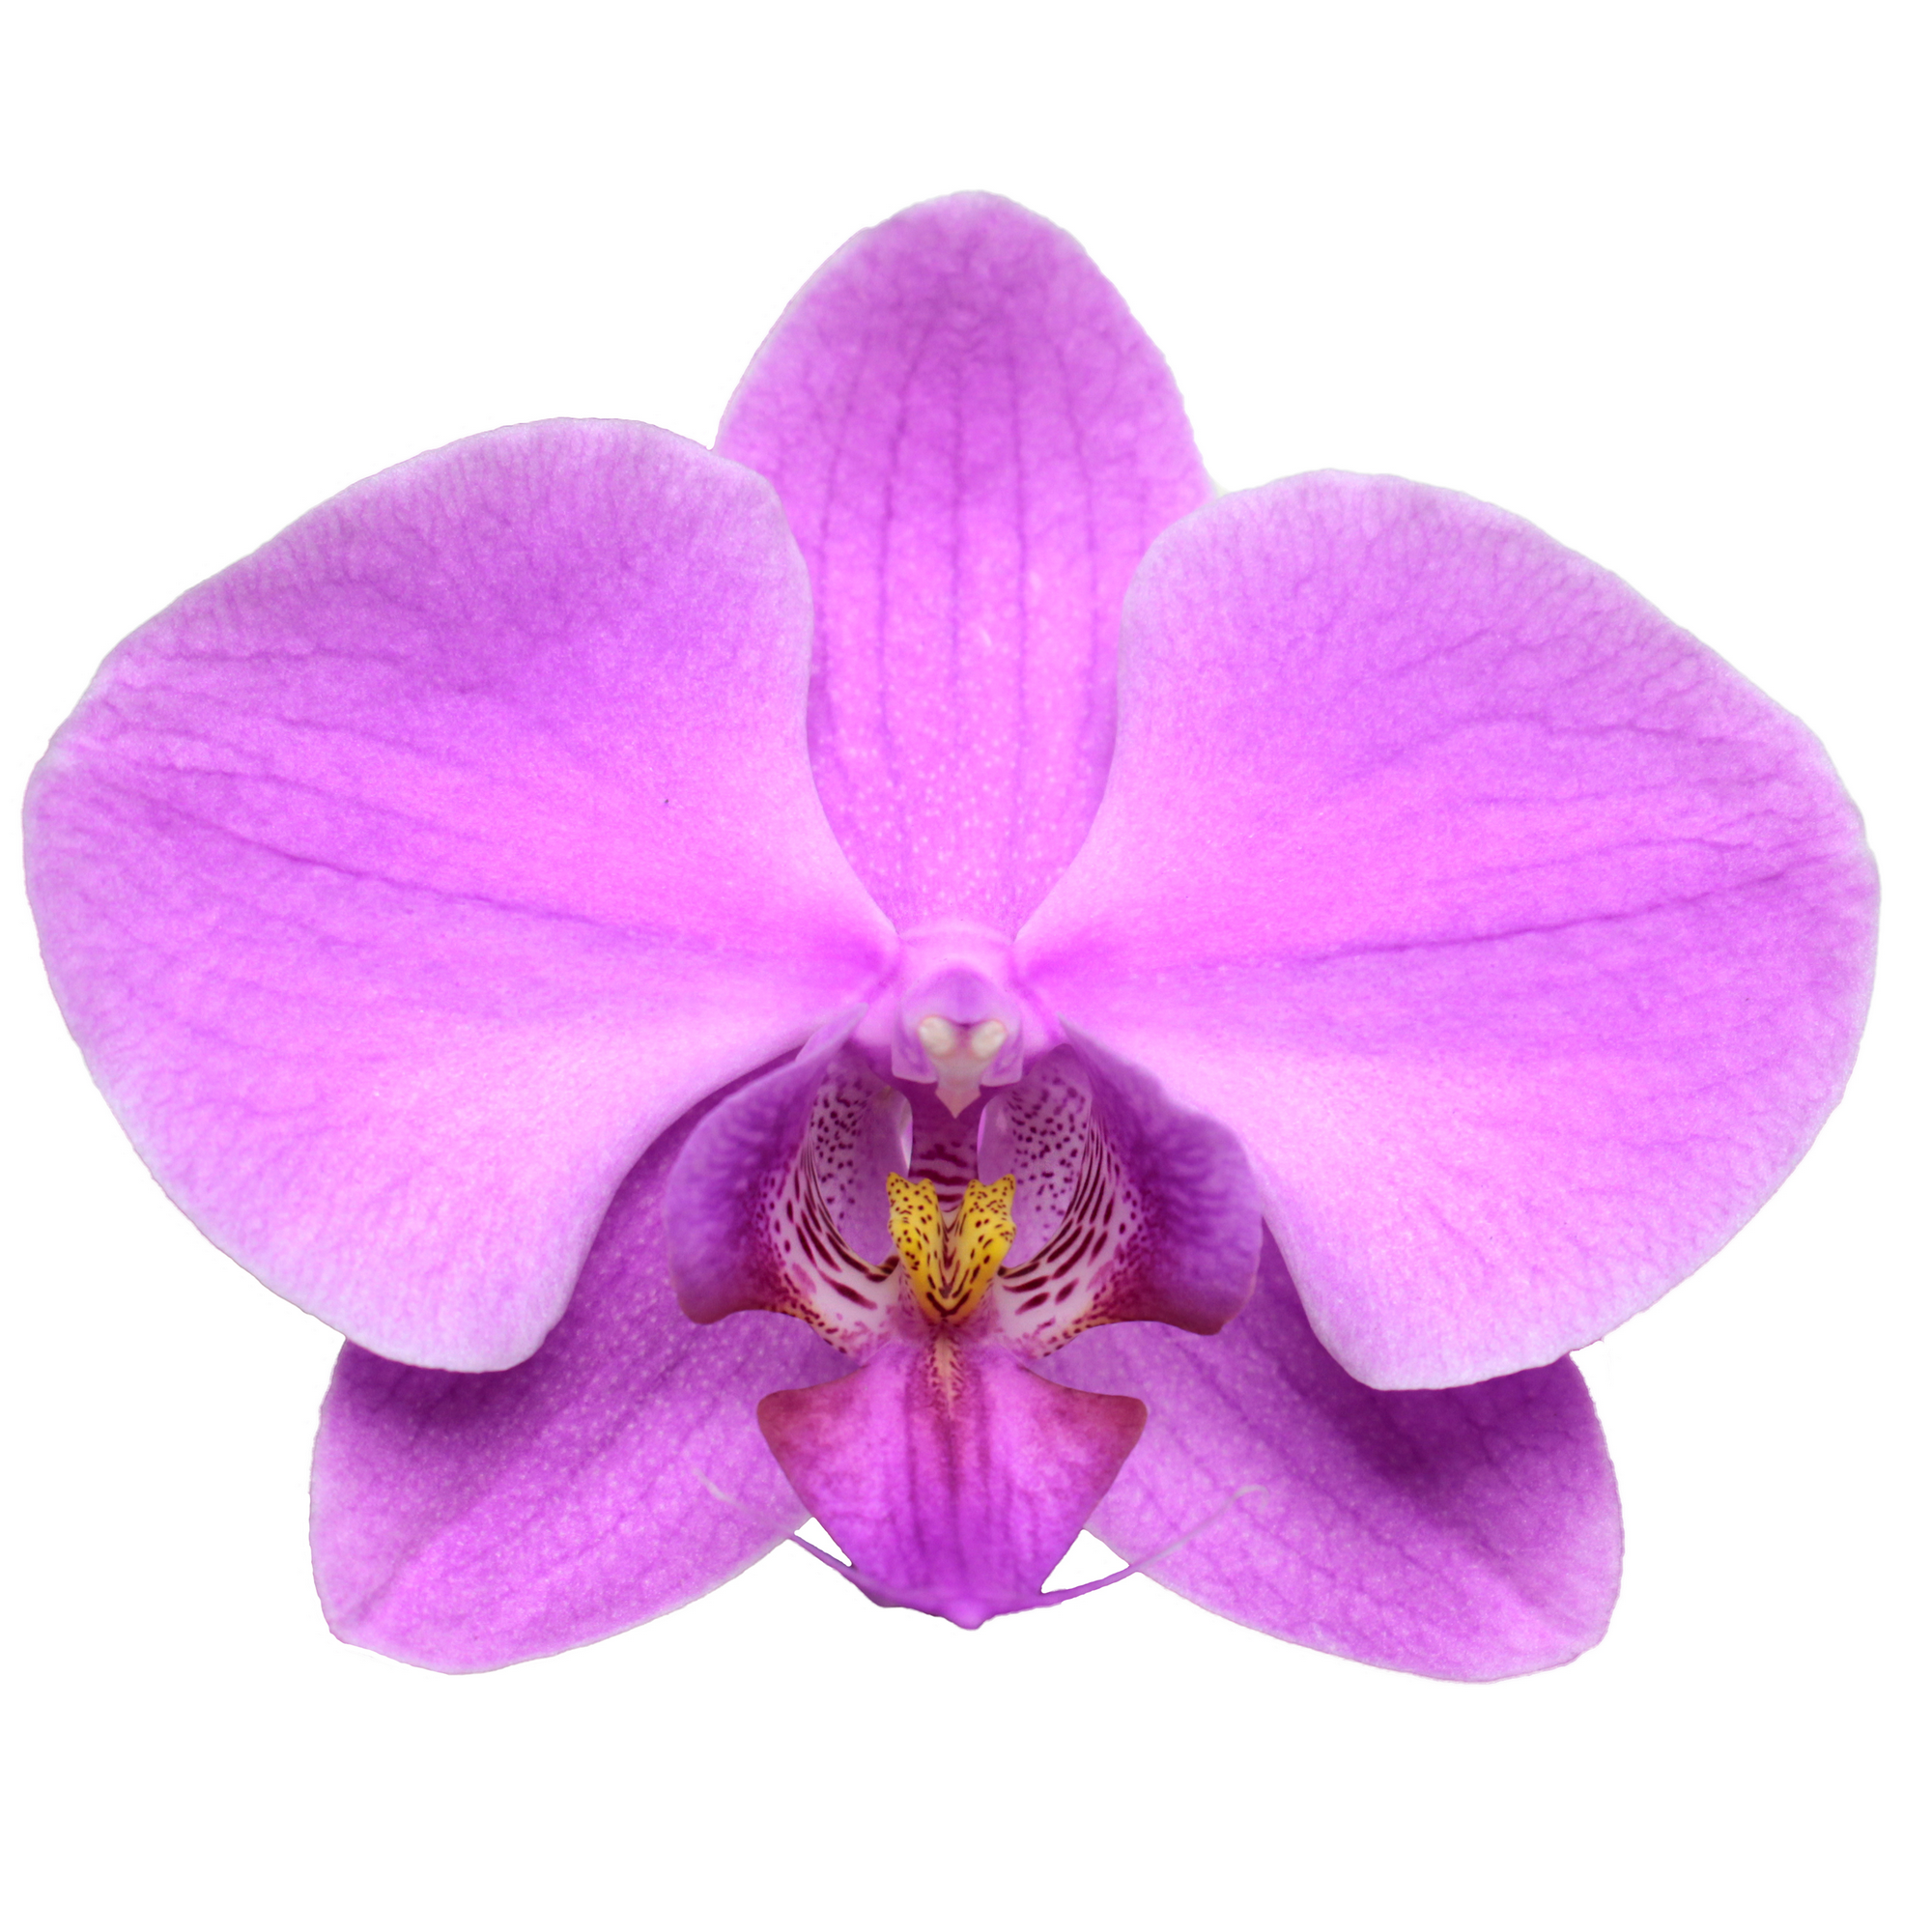 Schmetterlingsorchidee 2 Rispen dunkelrosa 12 cm Topf + product picture